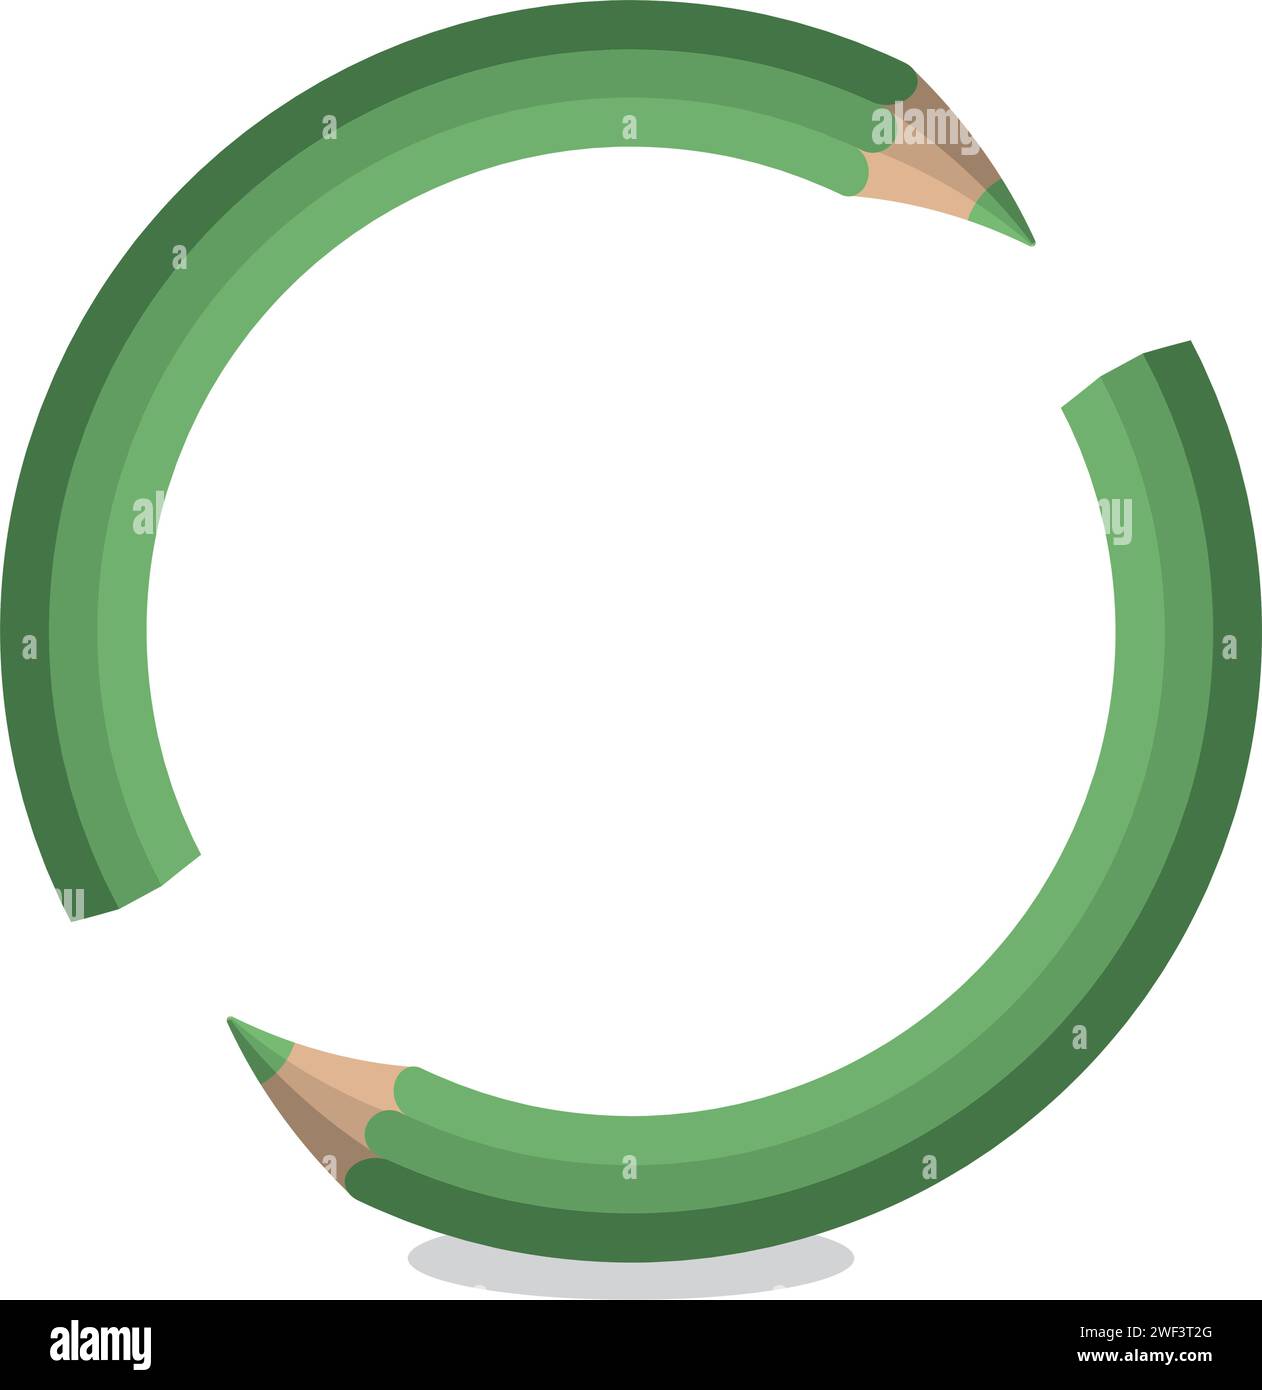 Un'illustrazione educativa di due matite verdi che formano un anello, simboleggia il ciclo continuo dell'apprendimento e l'importanza dell'unità e. Illustrazione Vettoriale